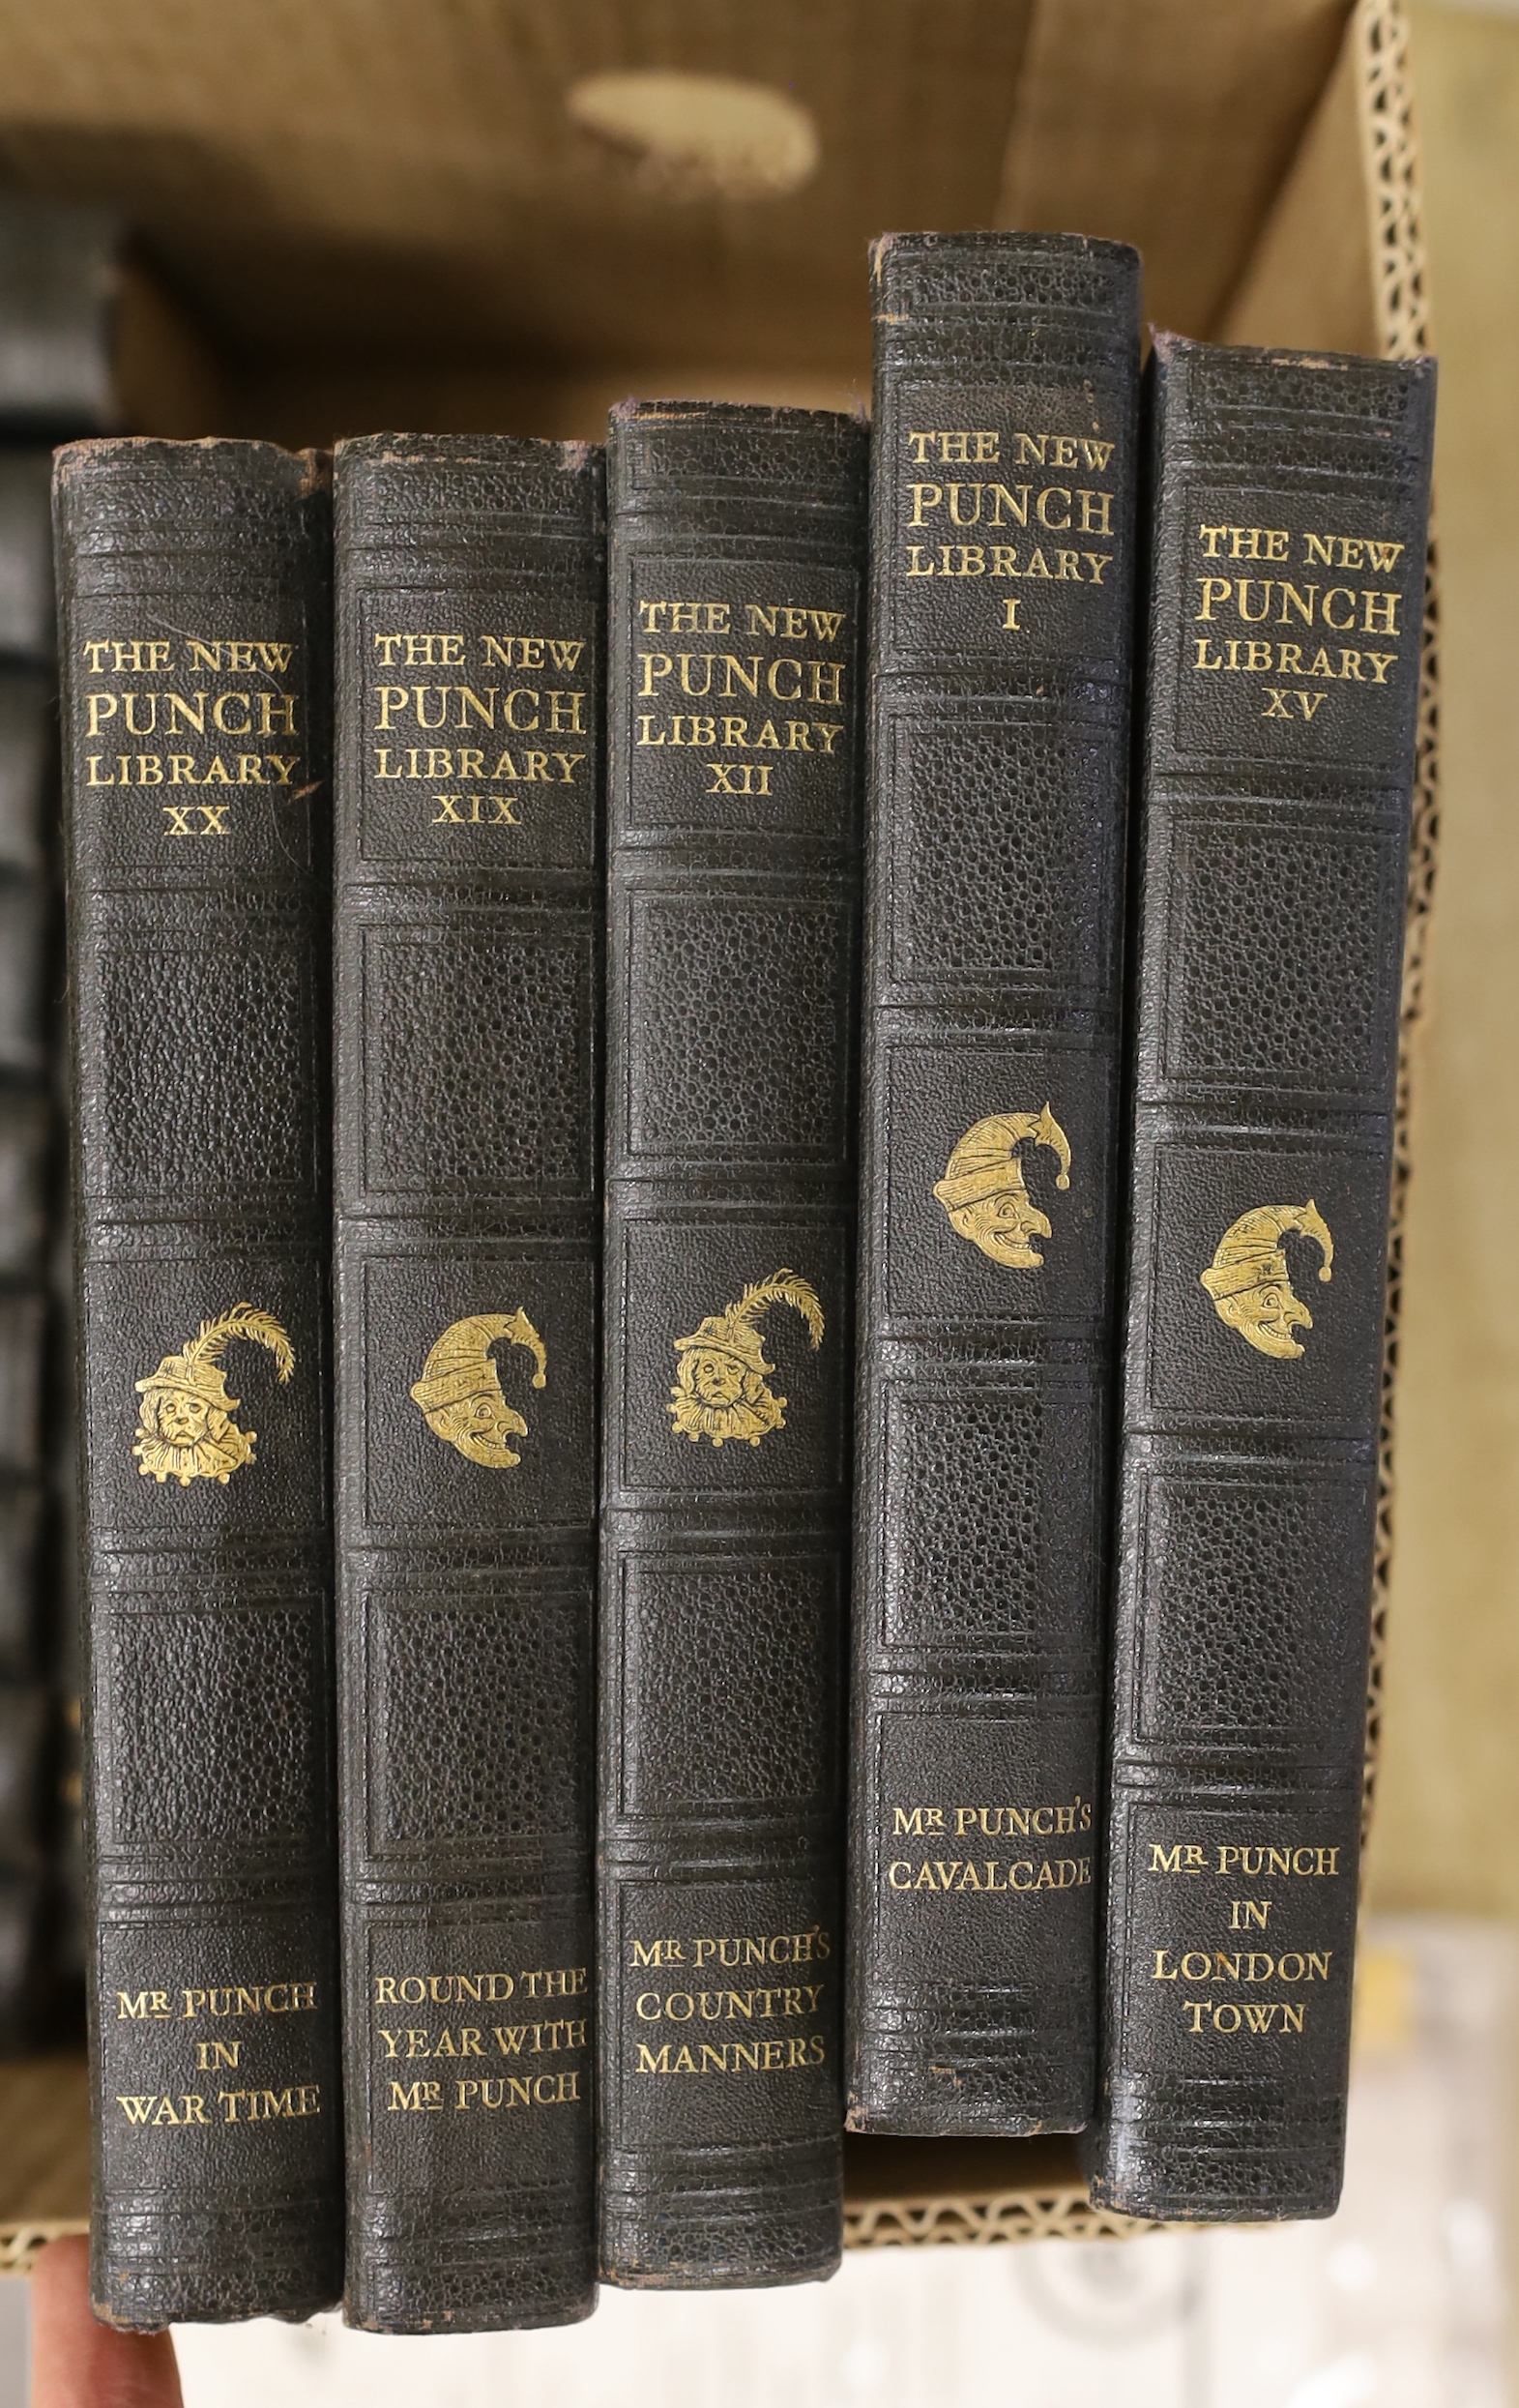 Twenty Punch books and related ephemera